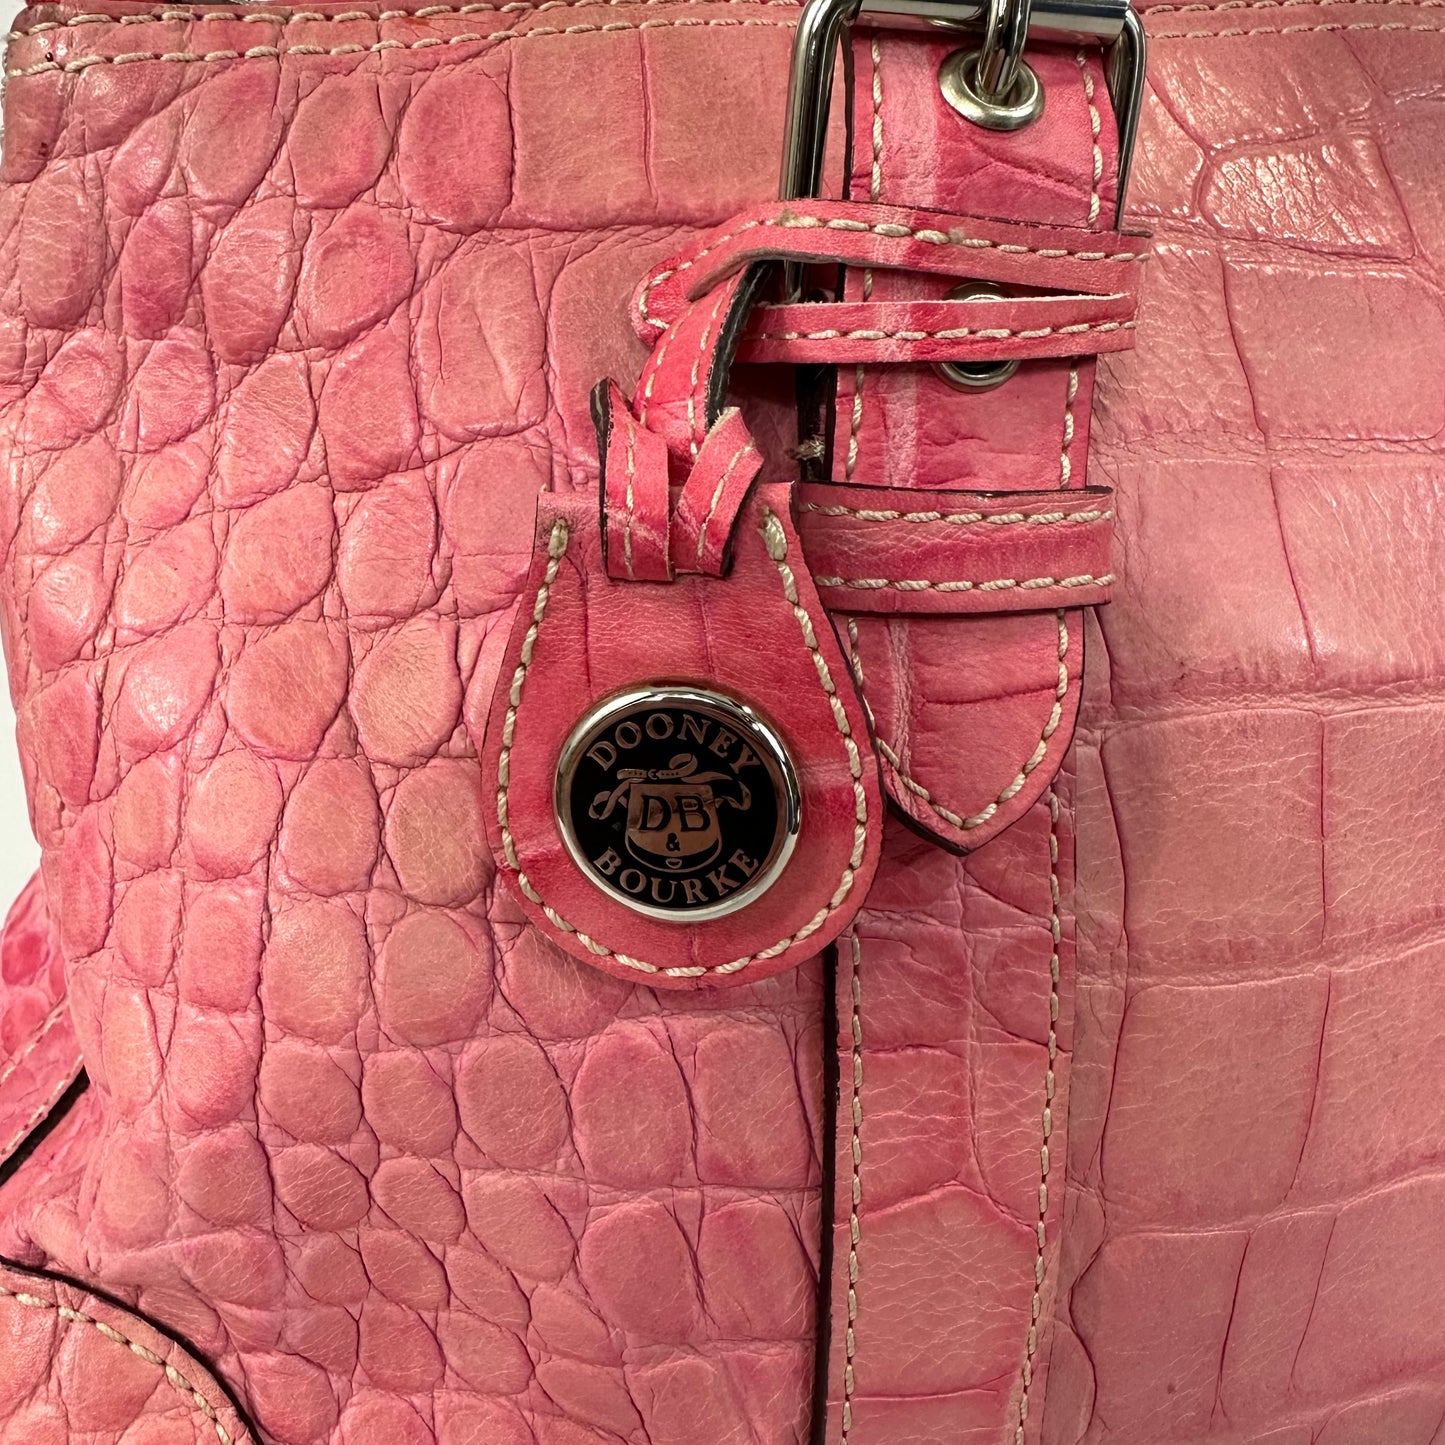 Vintage Y2K Dooney & Bourke Hot Pink Crocodile Embossed Leather Handbag